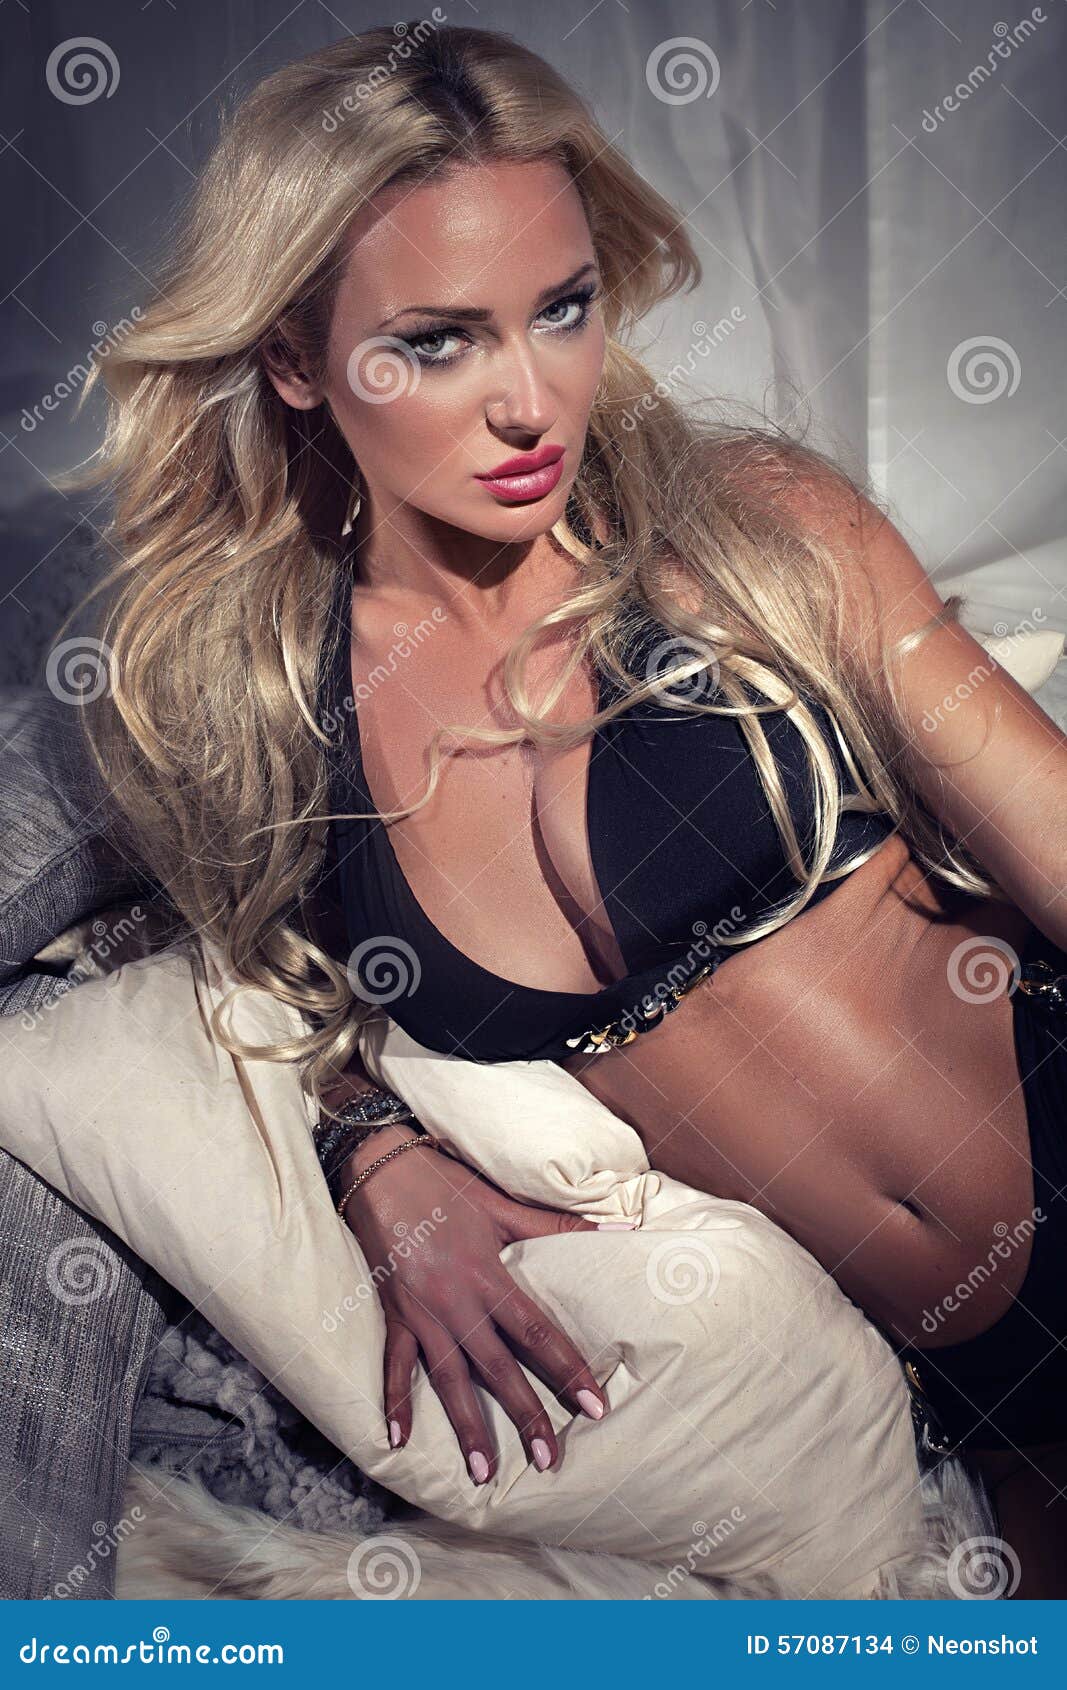 Femme Blonde Sexy Dans La Pose De Lingerie Photo Stock Image Du People Ajustement 57087134